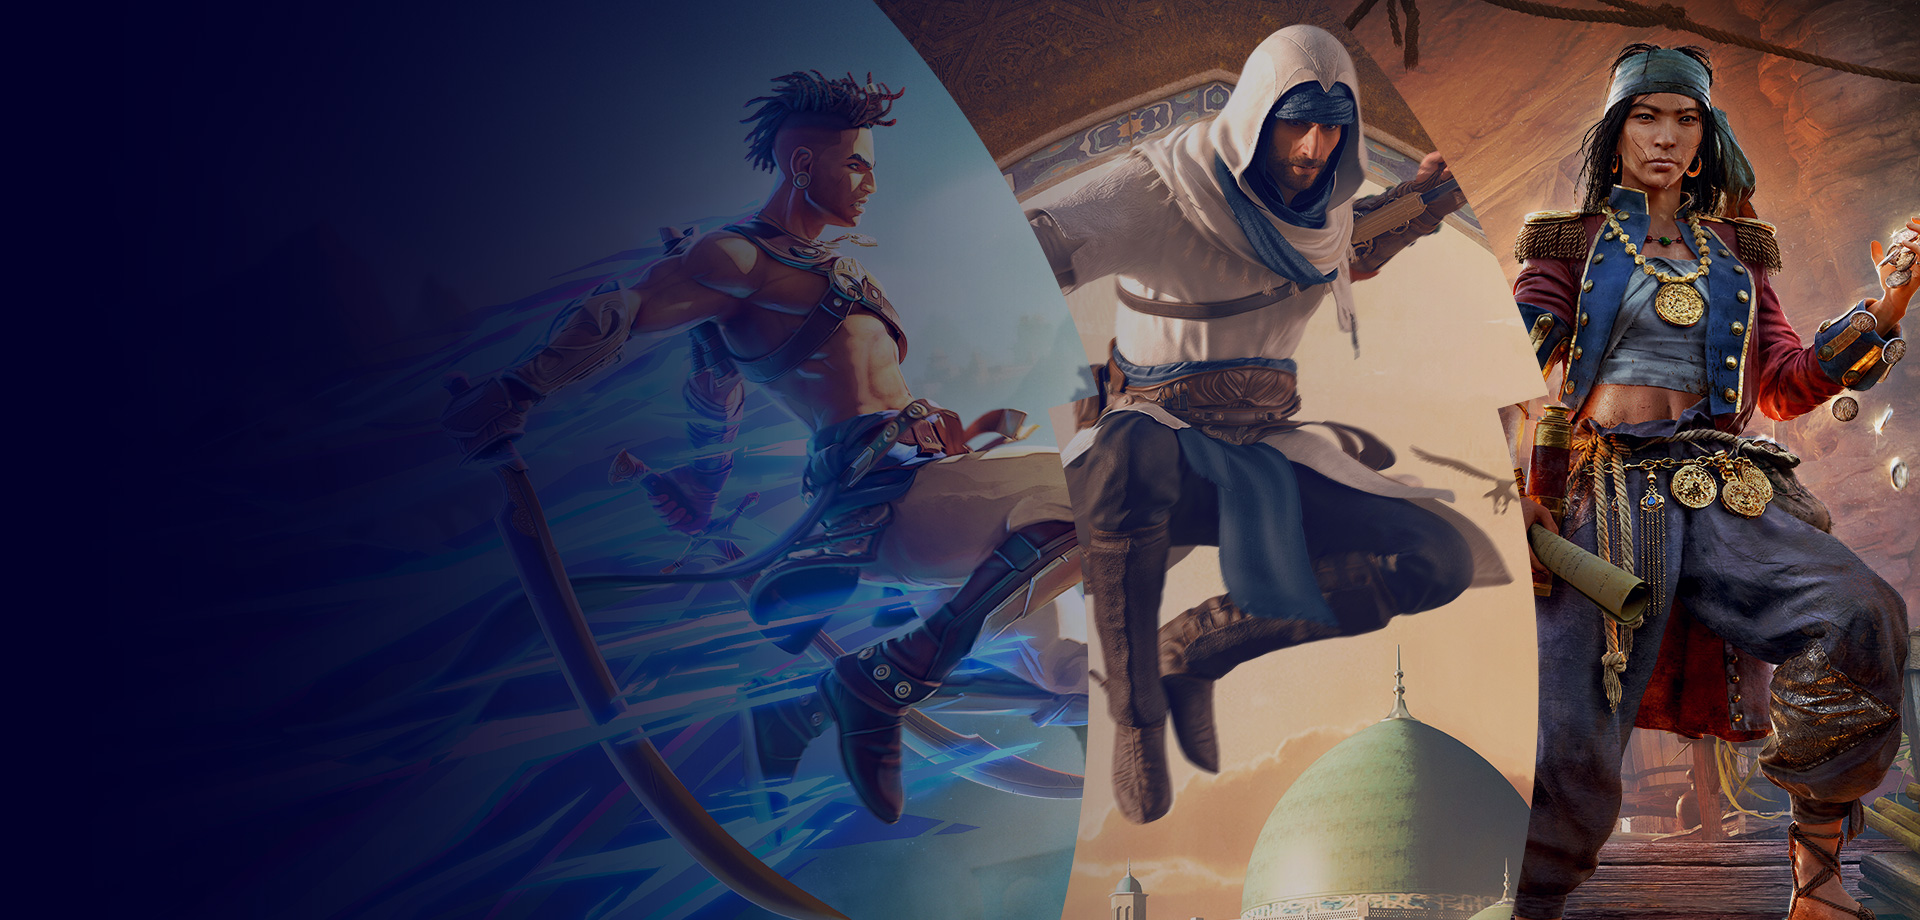 Tríptico com imagens de personagens de Prince of Persia, Assassin's Creed e Skull and Bones.